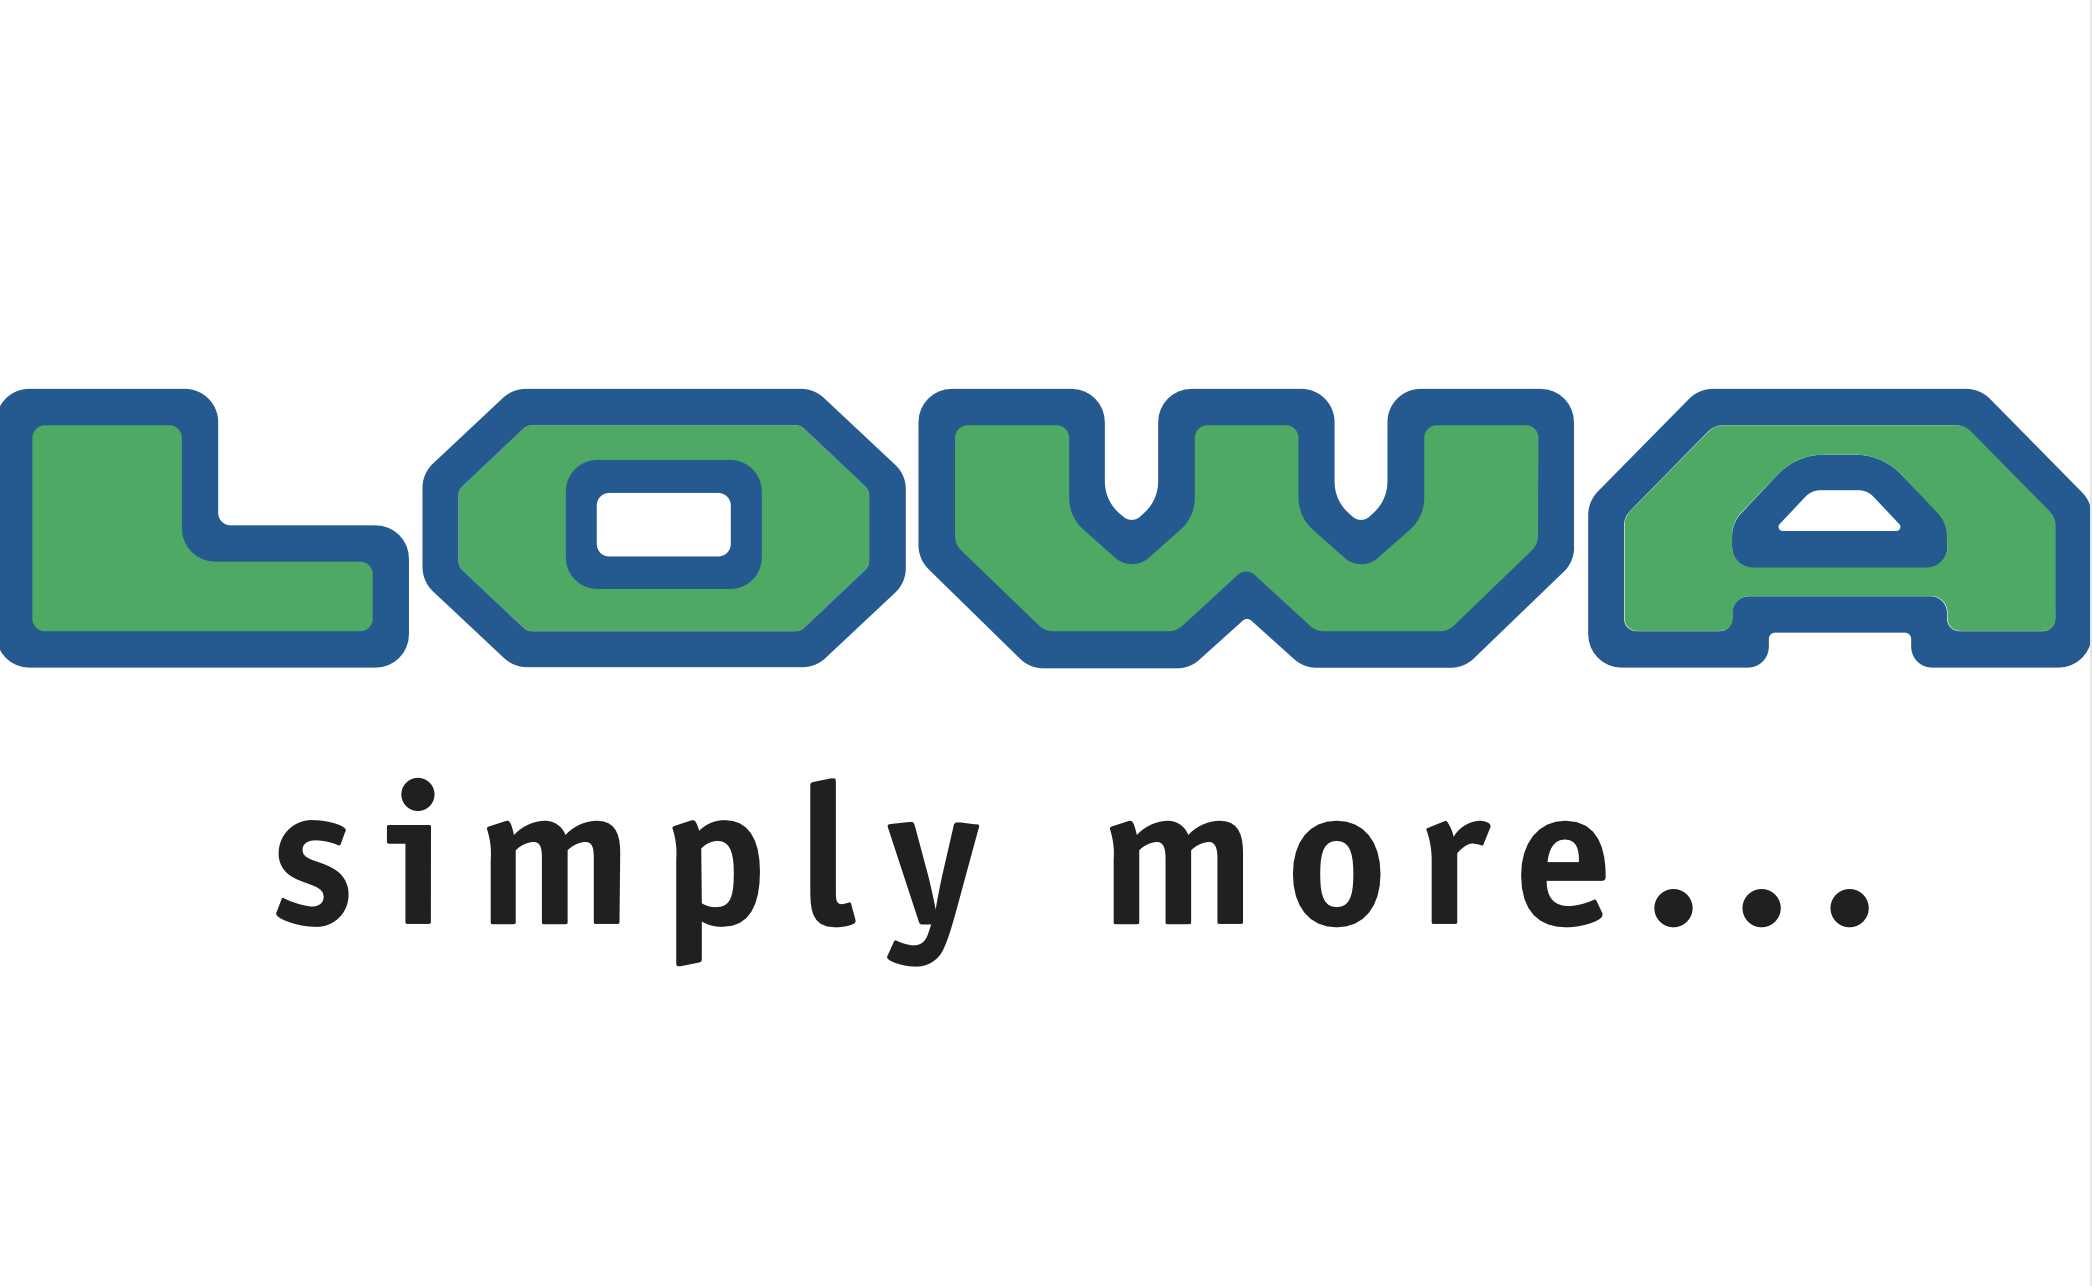 Lowa_logo